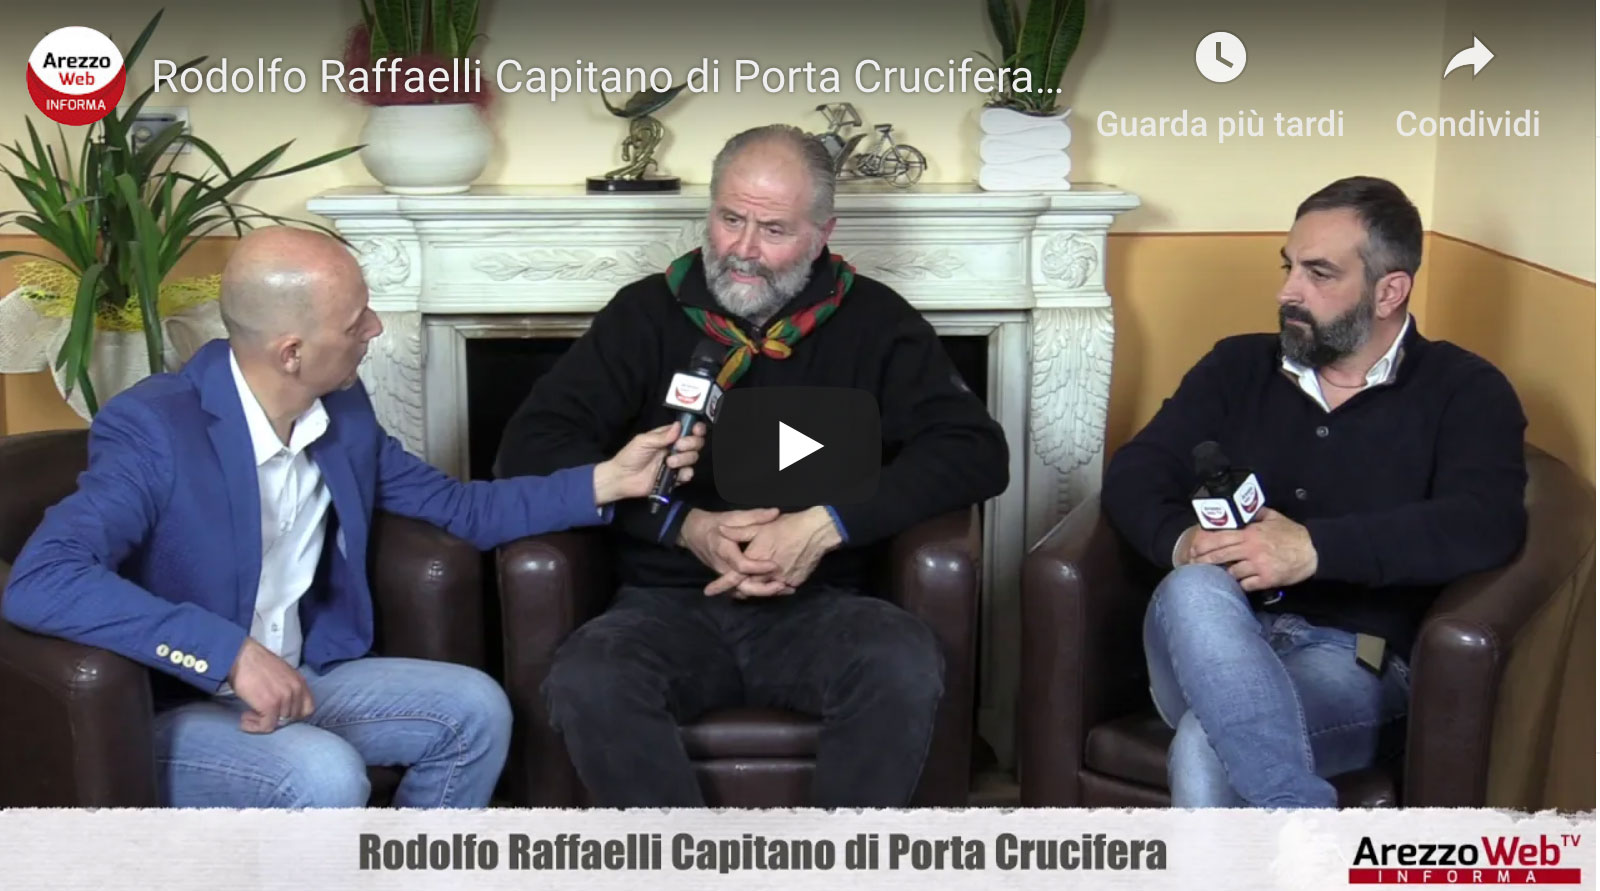 Rodolfo Raffaelli Capitano di Porta Crucifera ospite a “UN ALTRO GIRO DI GIOSTRA”